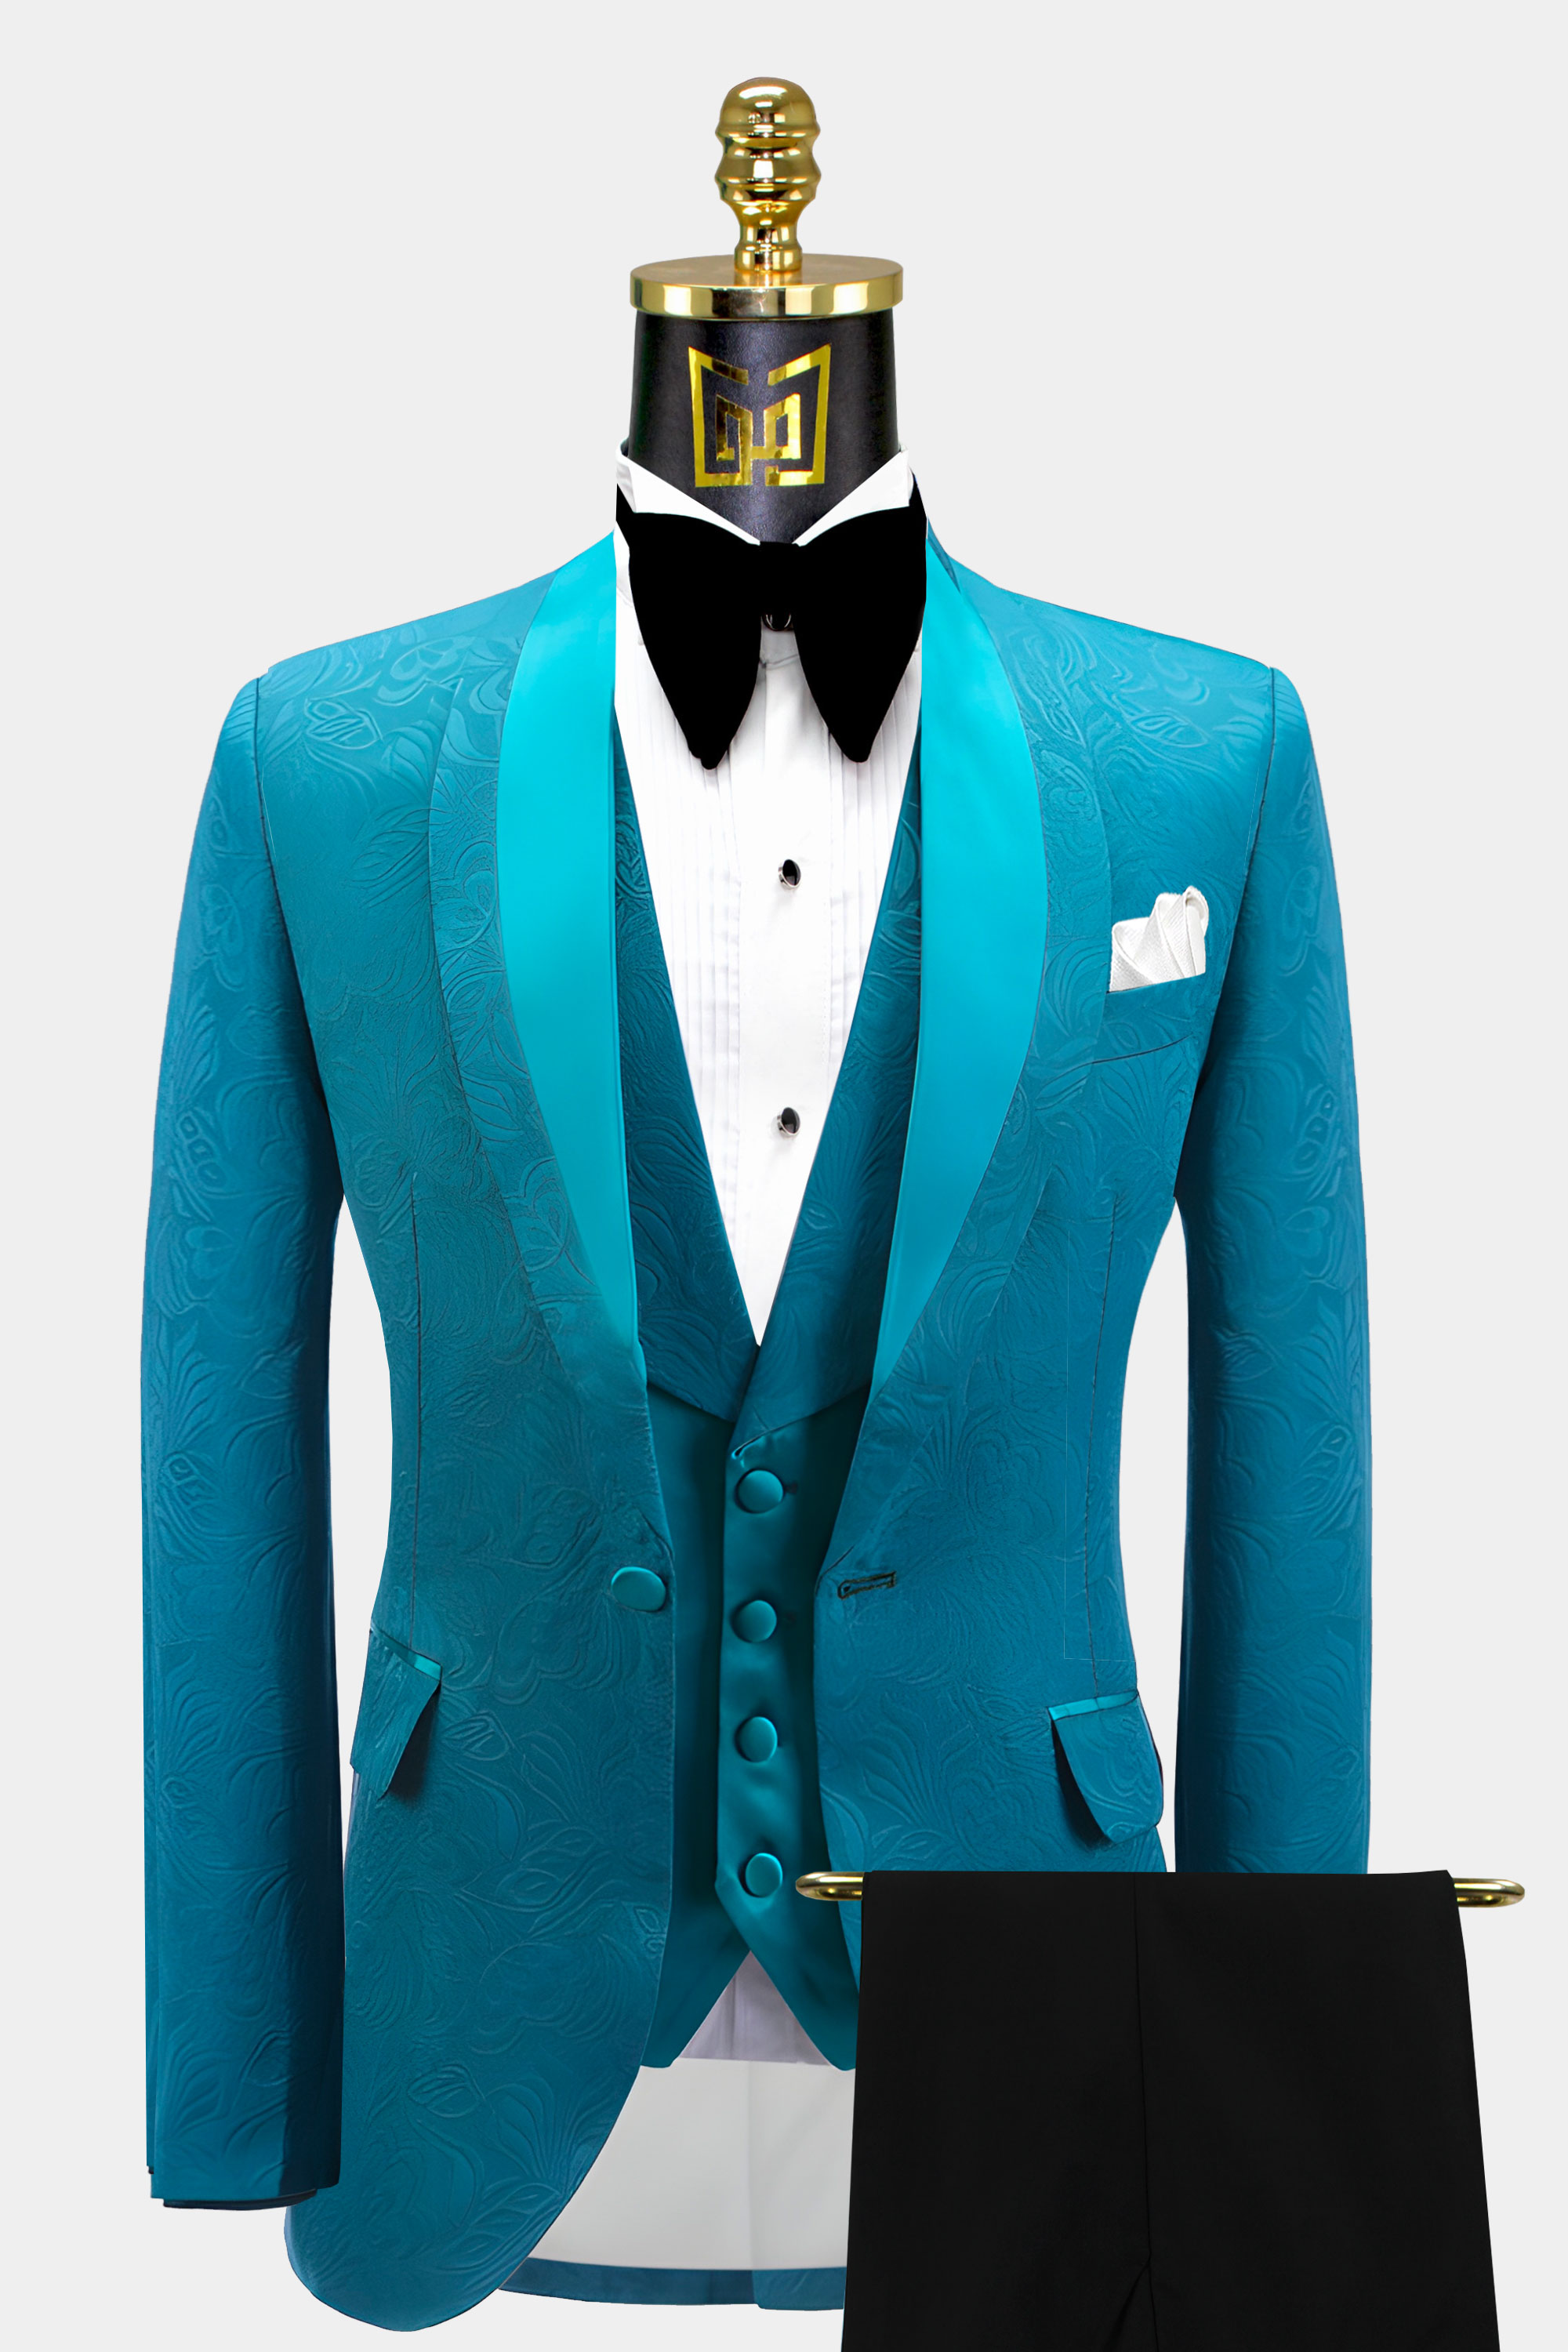 Turquoise-Blue-Tuxedo-Groom-Wedding-Suit-For-Men-from-Gentlemansguru.com